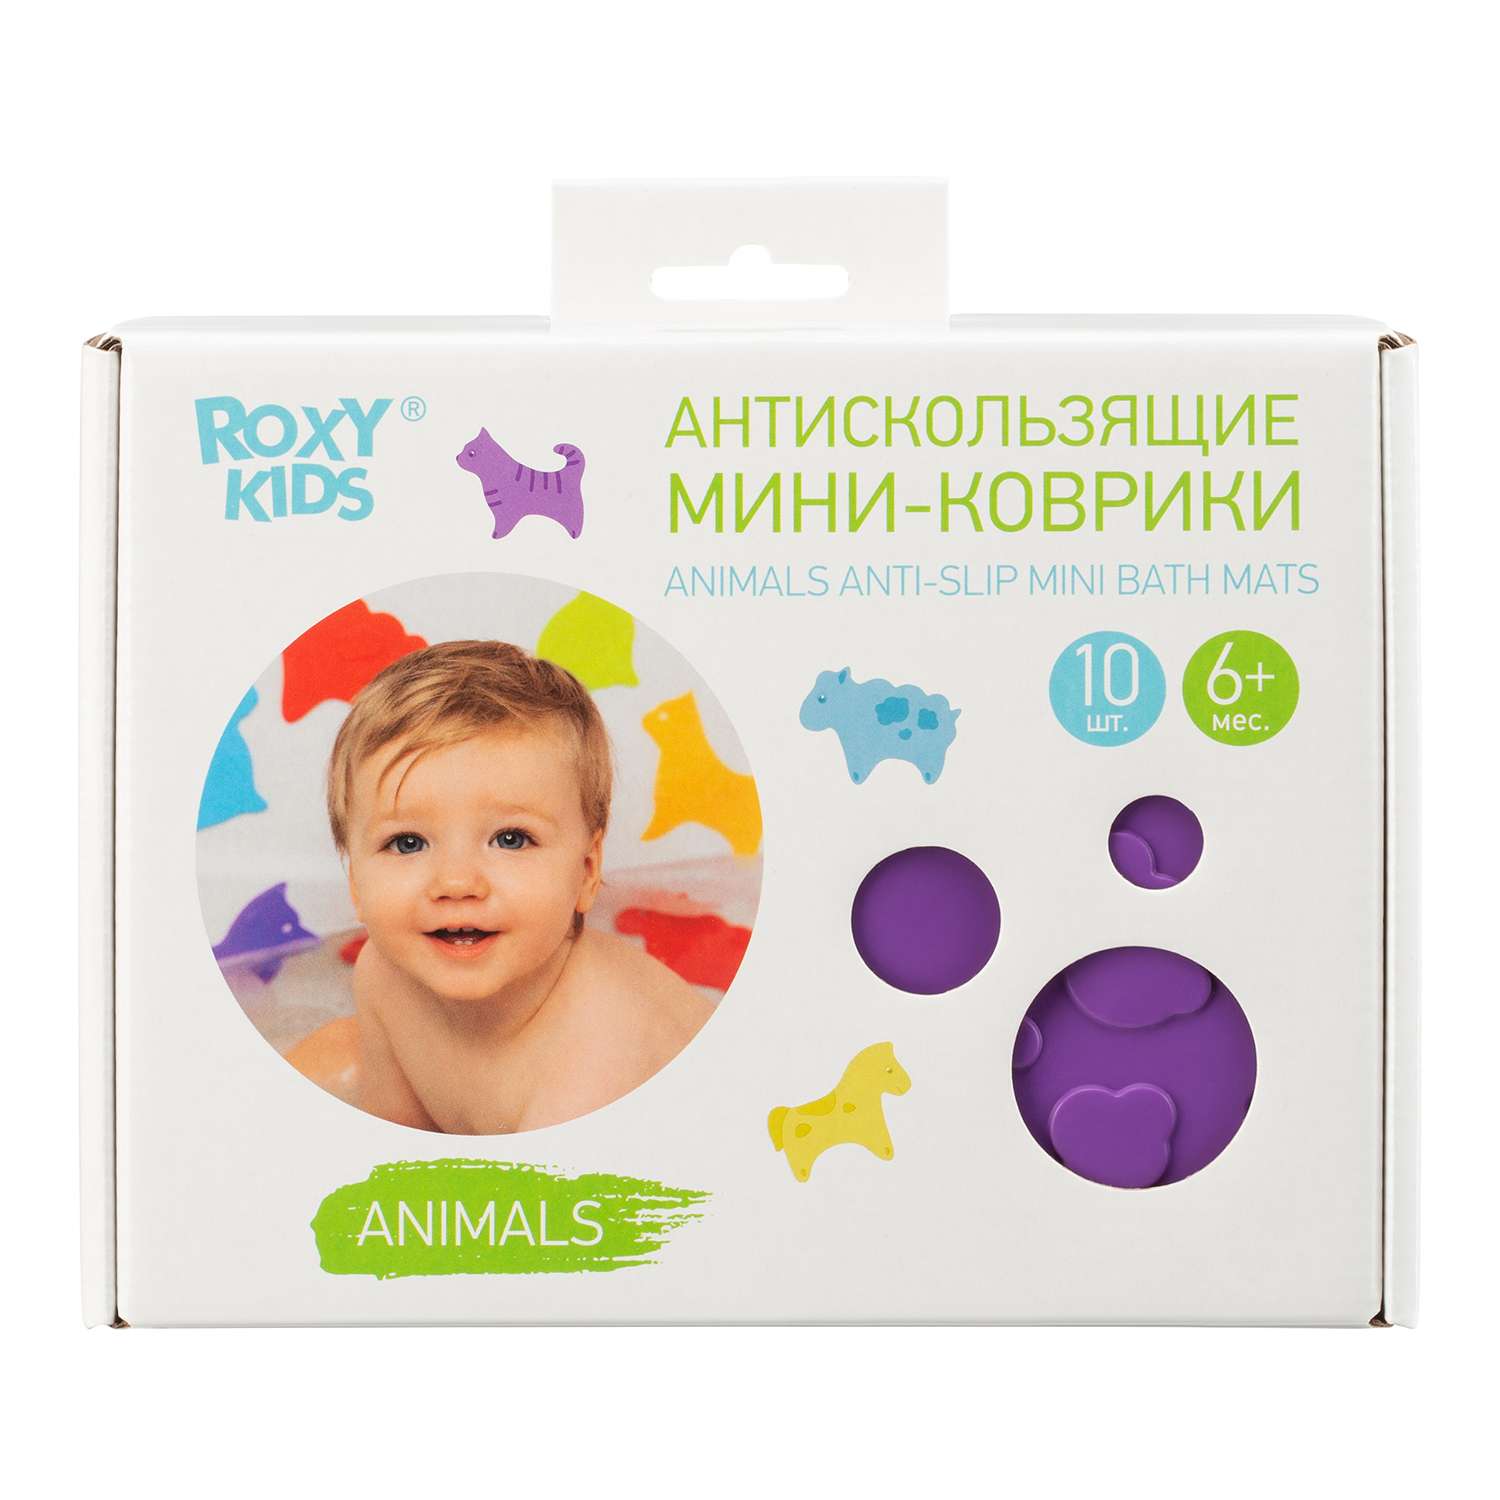 Набор мини-ковриков для ванны ROXY-KIDS Animals антискользящие 10шт RBM-010-CC - фото 2